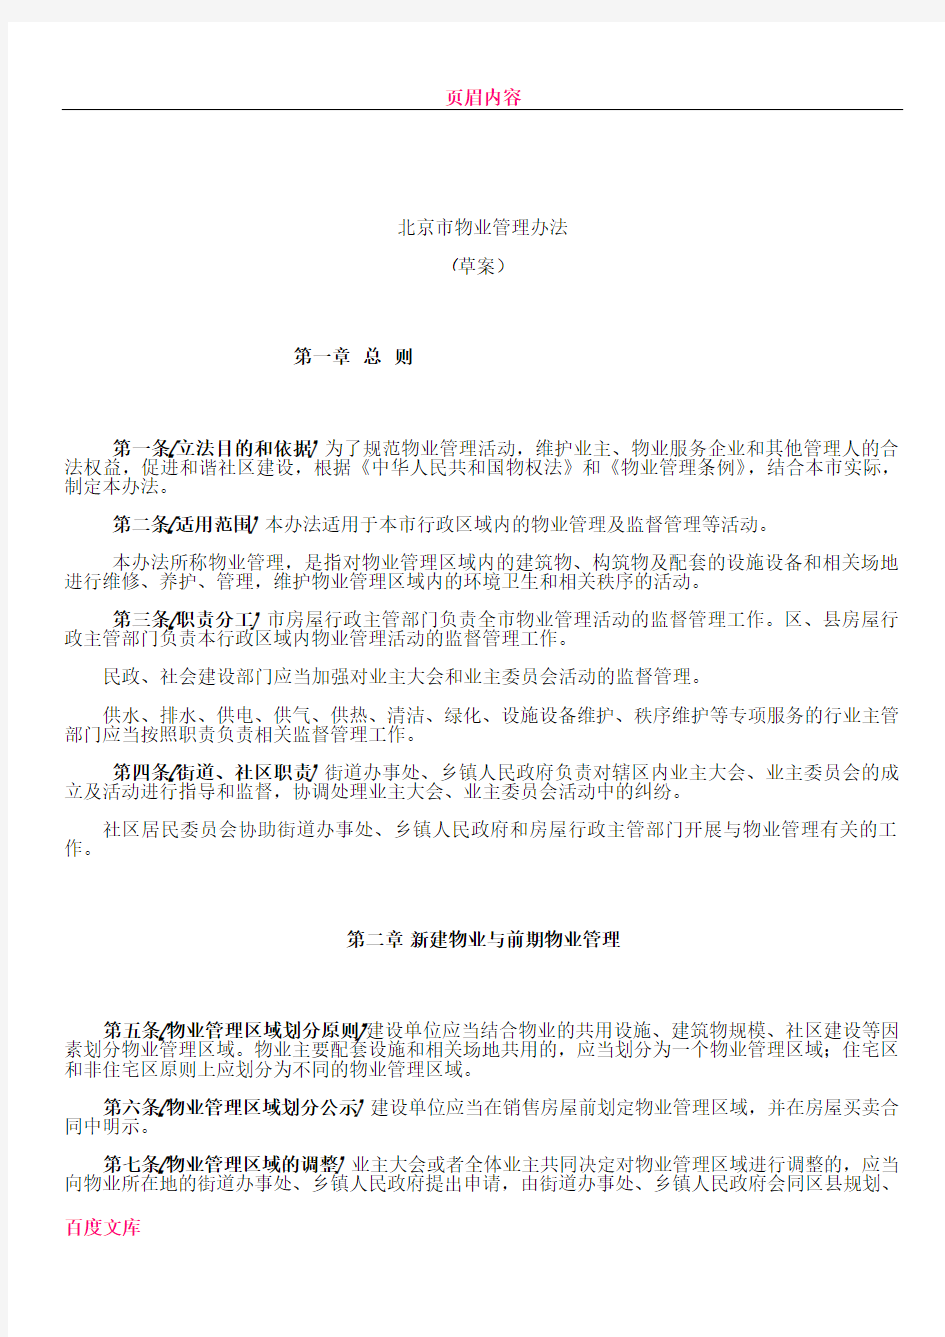 《北京市物业管理办法(草案)》起草说明及办法附件